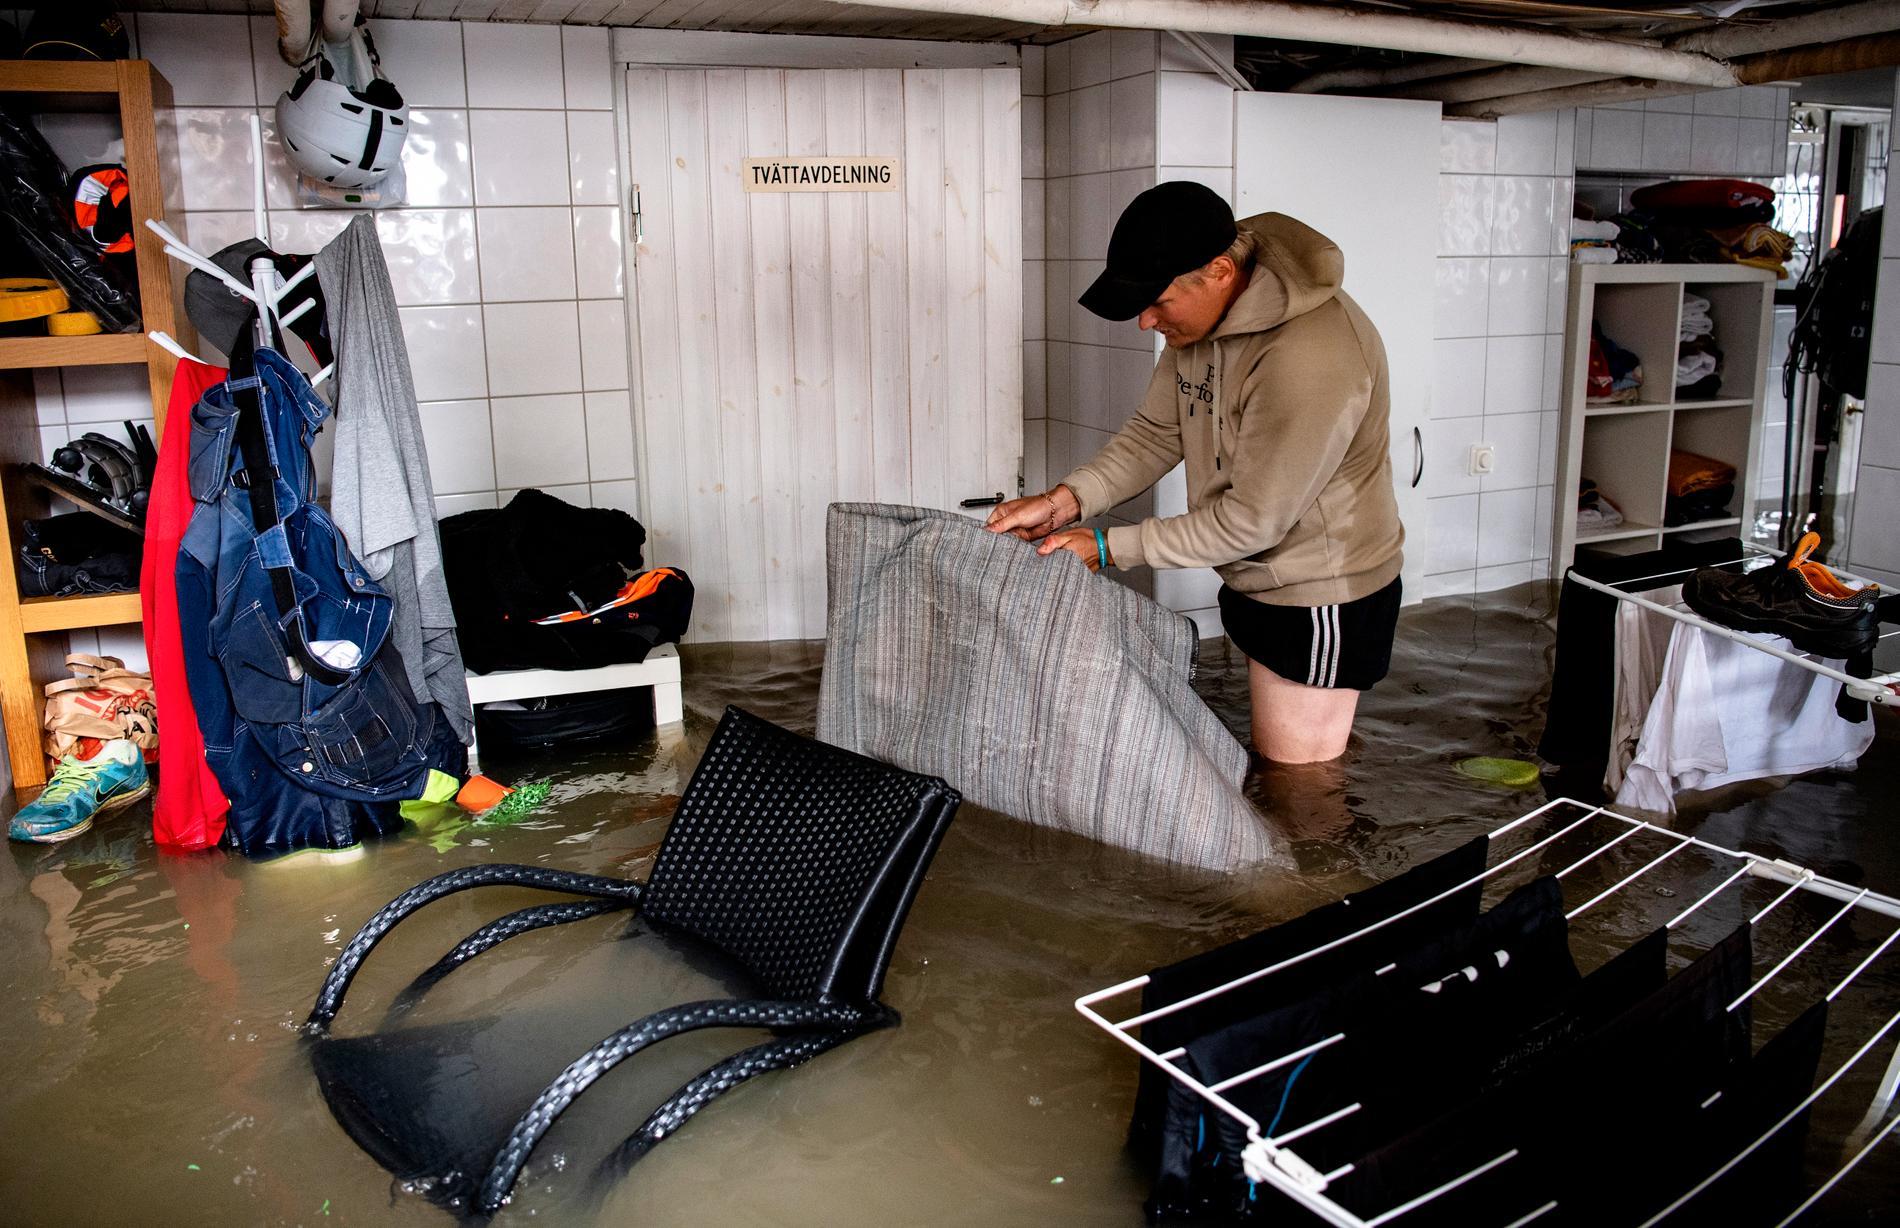 Tobias Åström hjälper sin far Pekka Rovanperäs att röja. De möttes av en meter vatten i källaren efter det intensiva regnandet som drabbade Gävle i augusti.